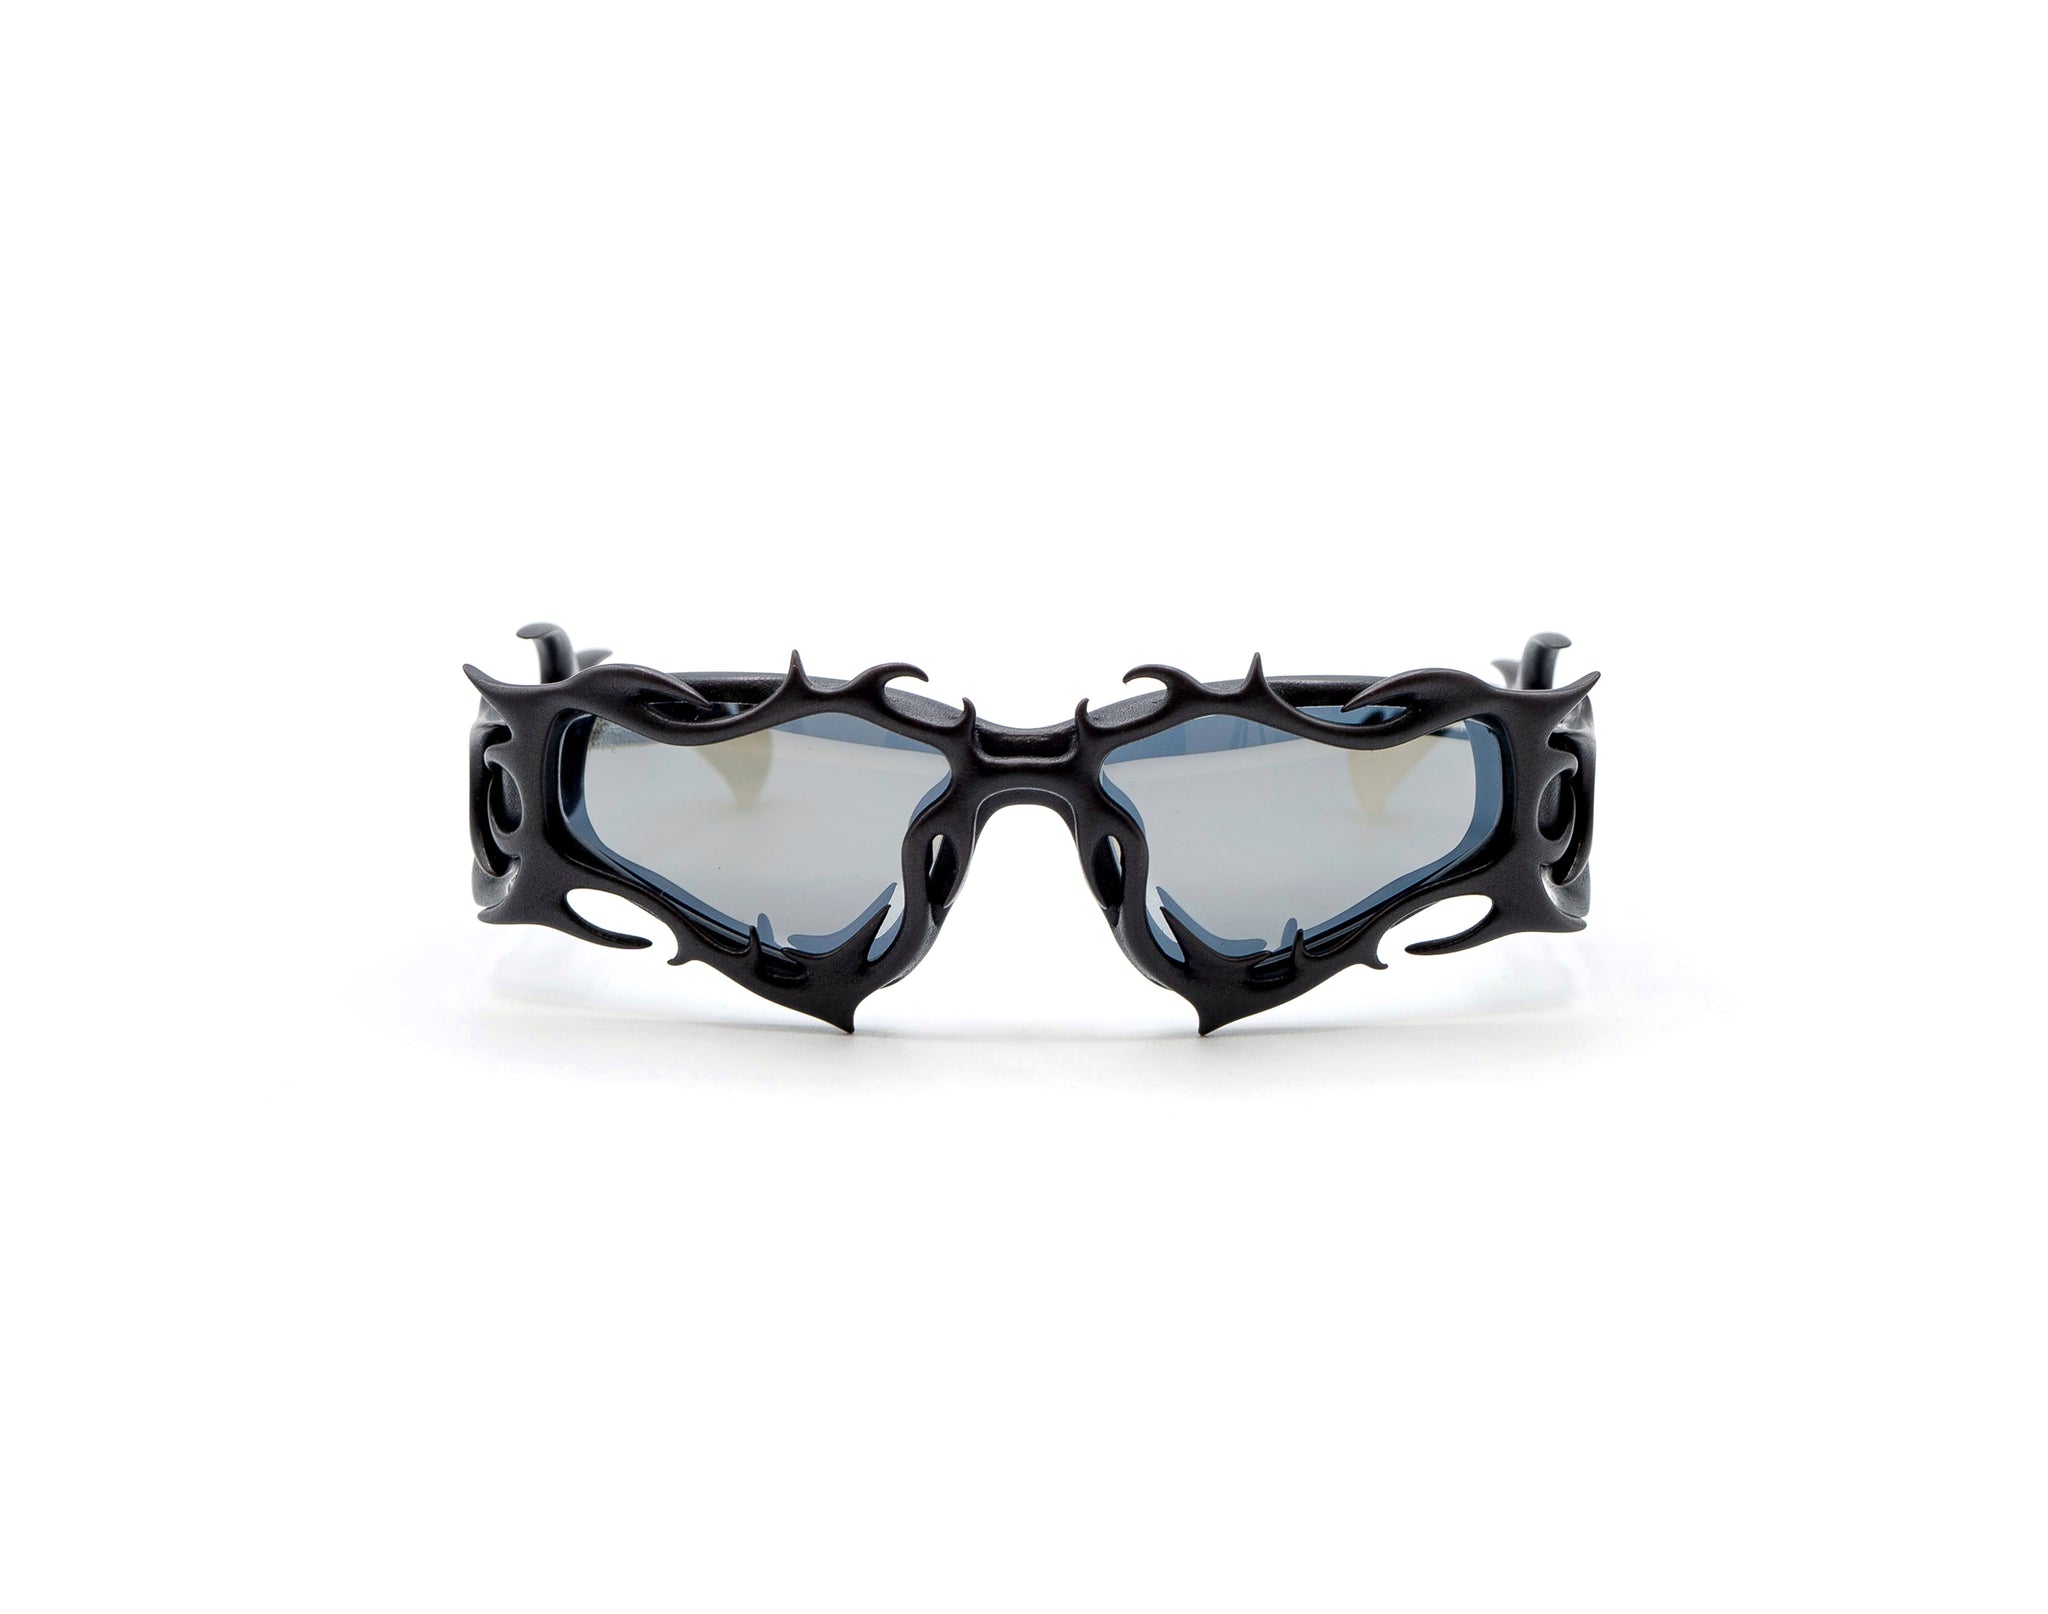 Gafas de diseño neo-cyberpunk de impresión 3D con lentes fotocromáticas